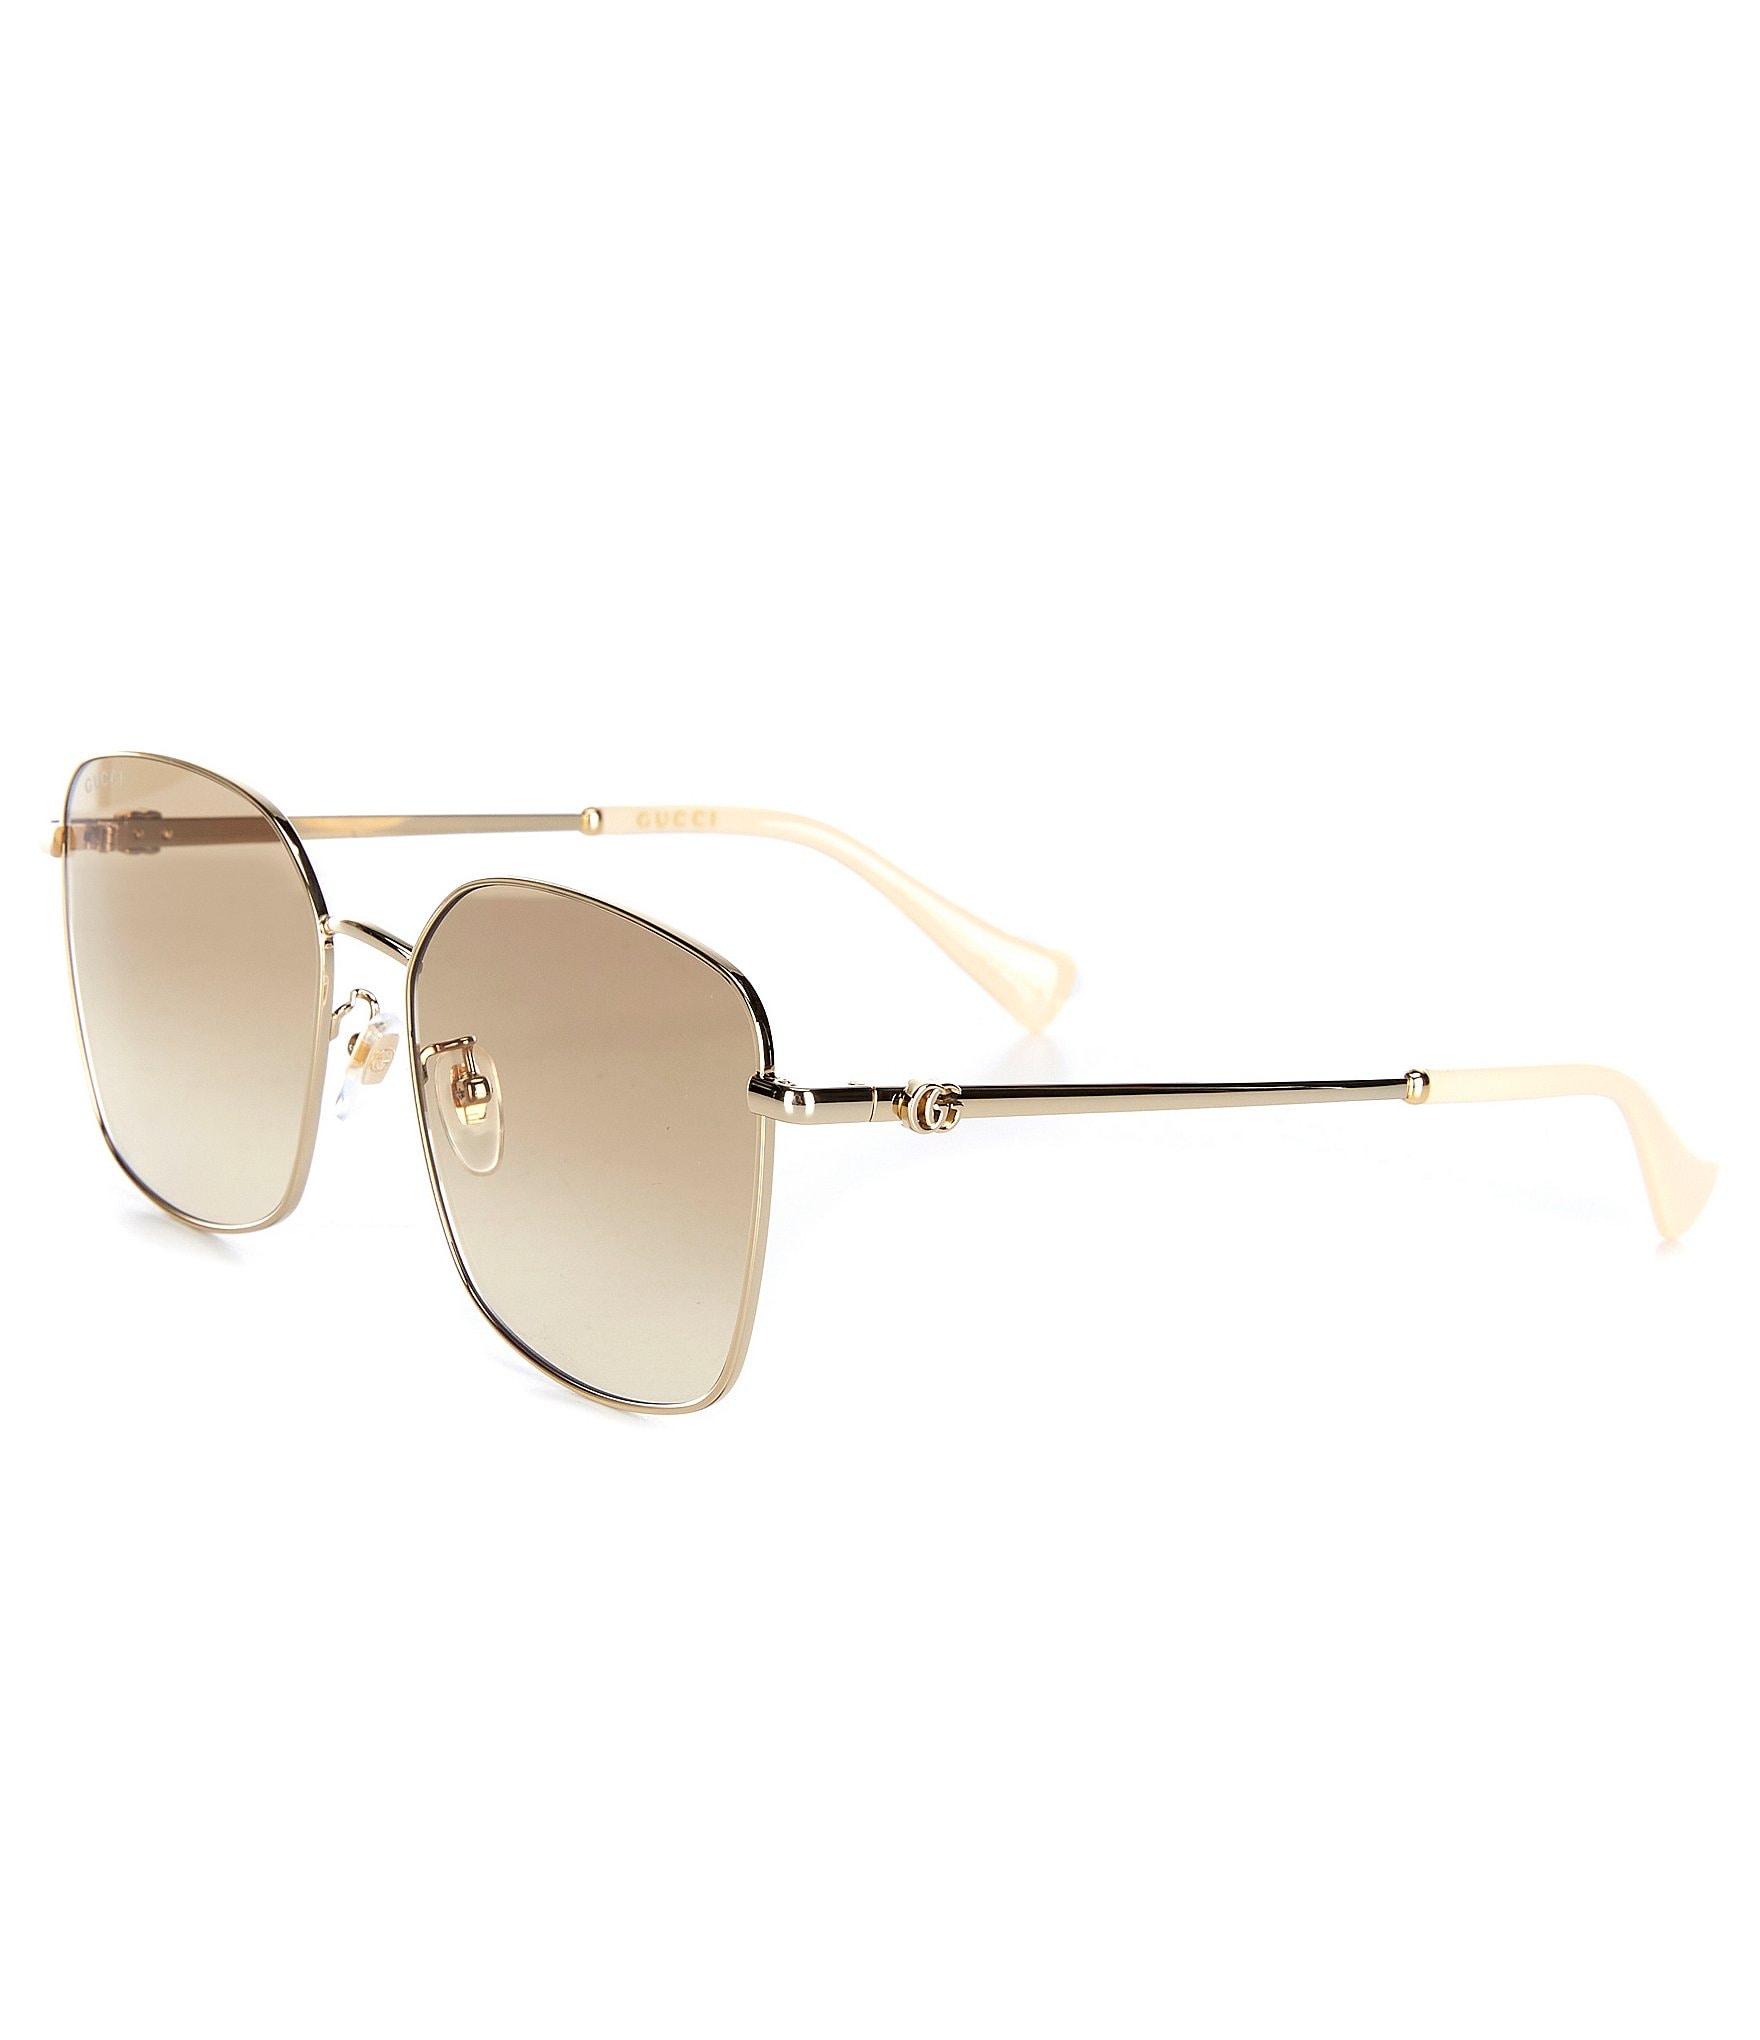 Gucci GG1146SK Square Sunglasses